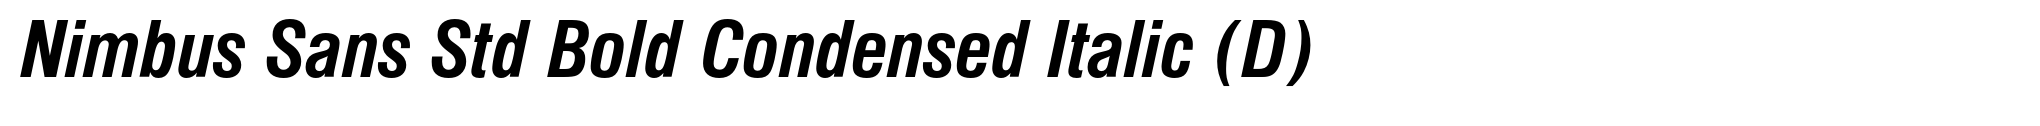 Nimbus Sans Std Bold Condensed Italic (D) image